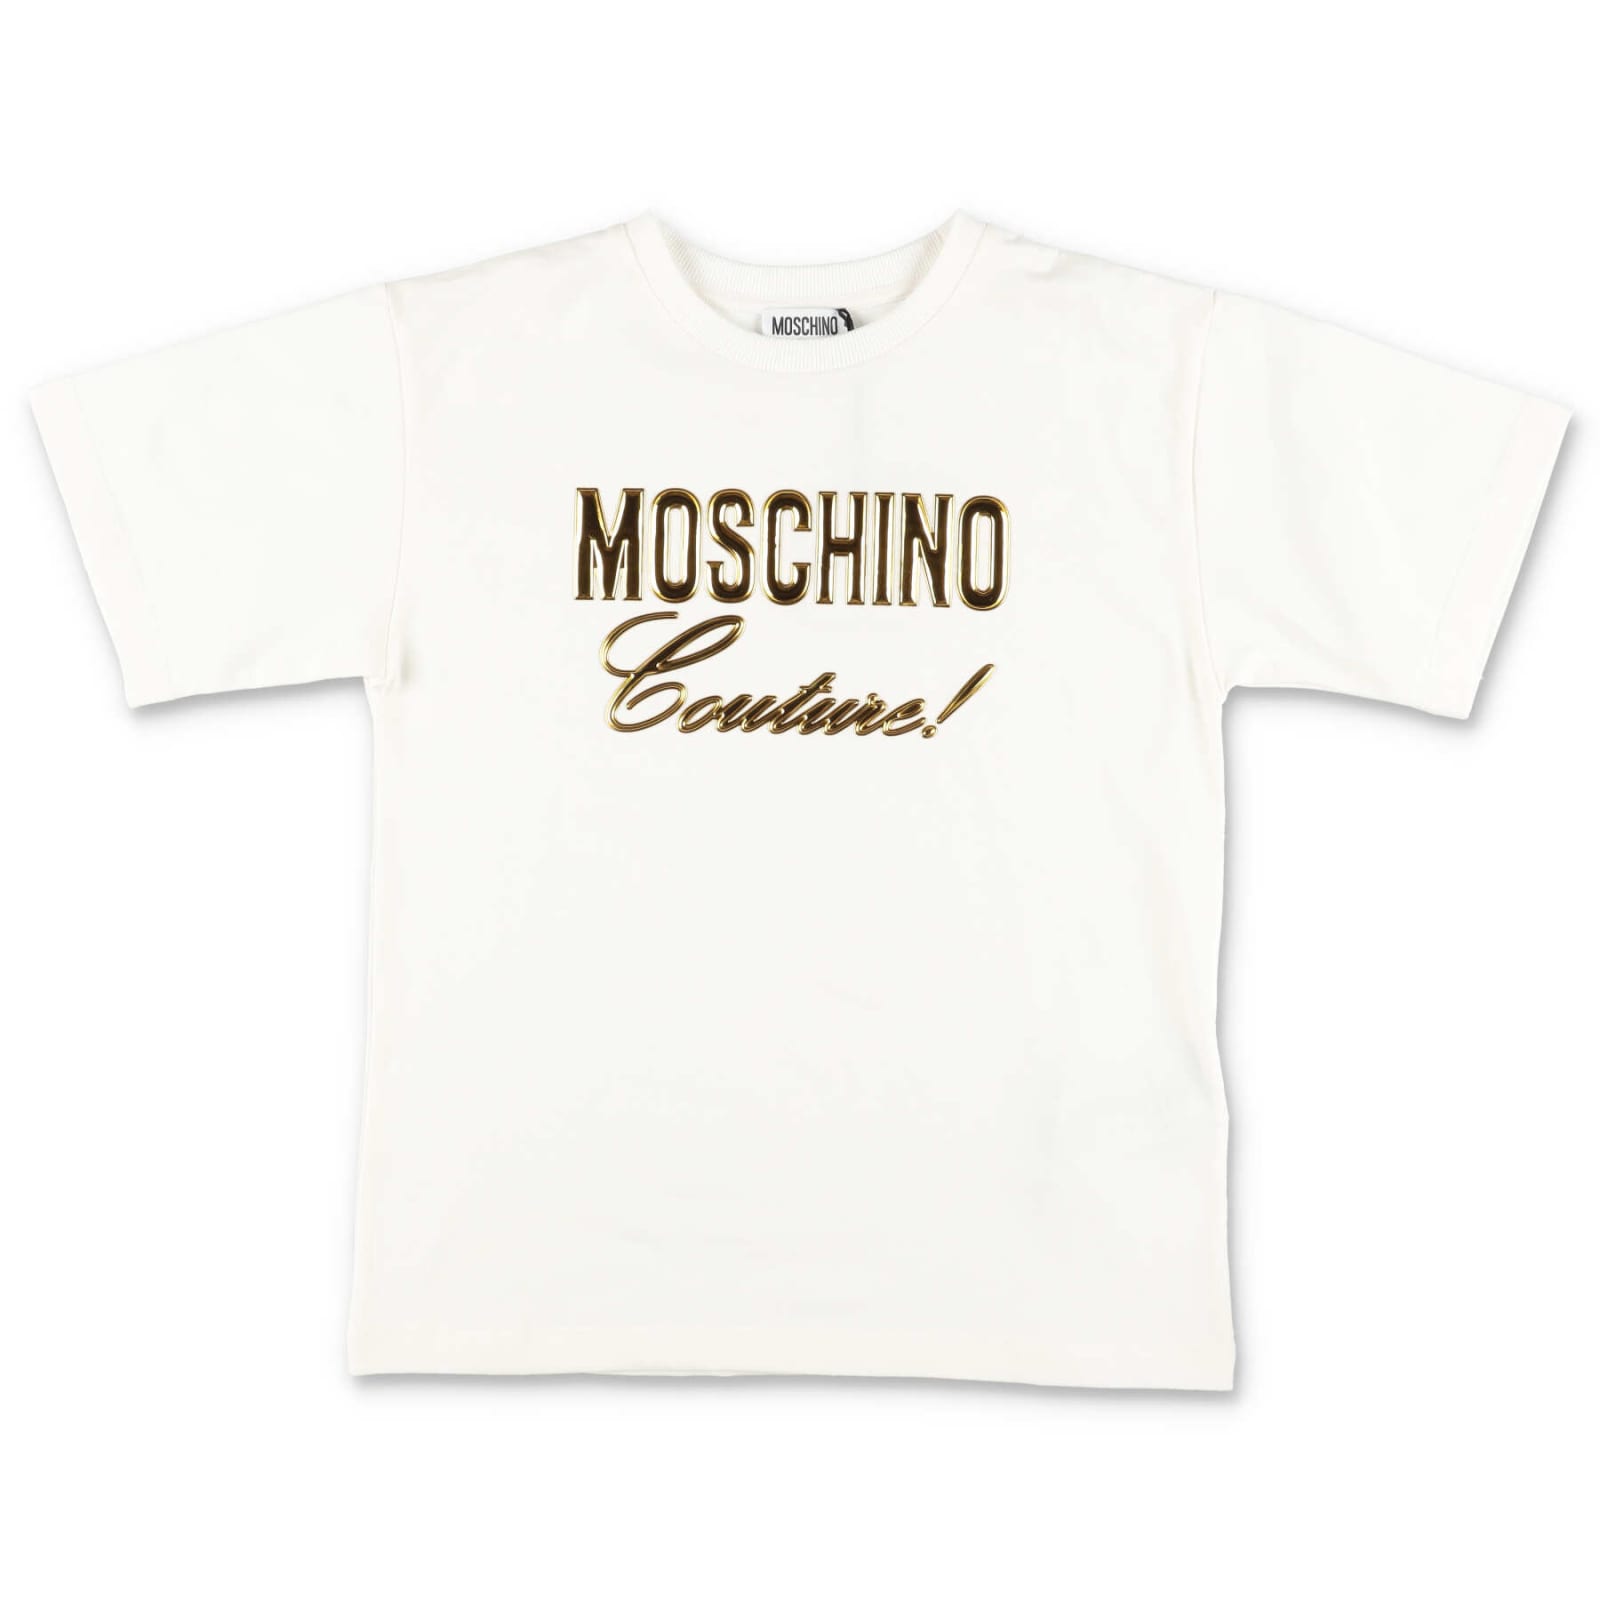 Moschino Maxi T-shirt Bianca In Jersey Di Cotone